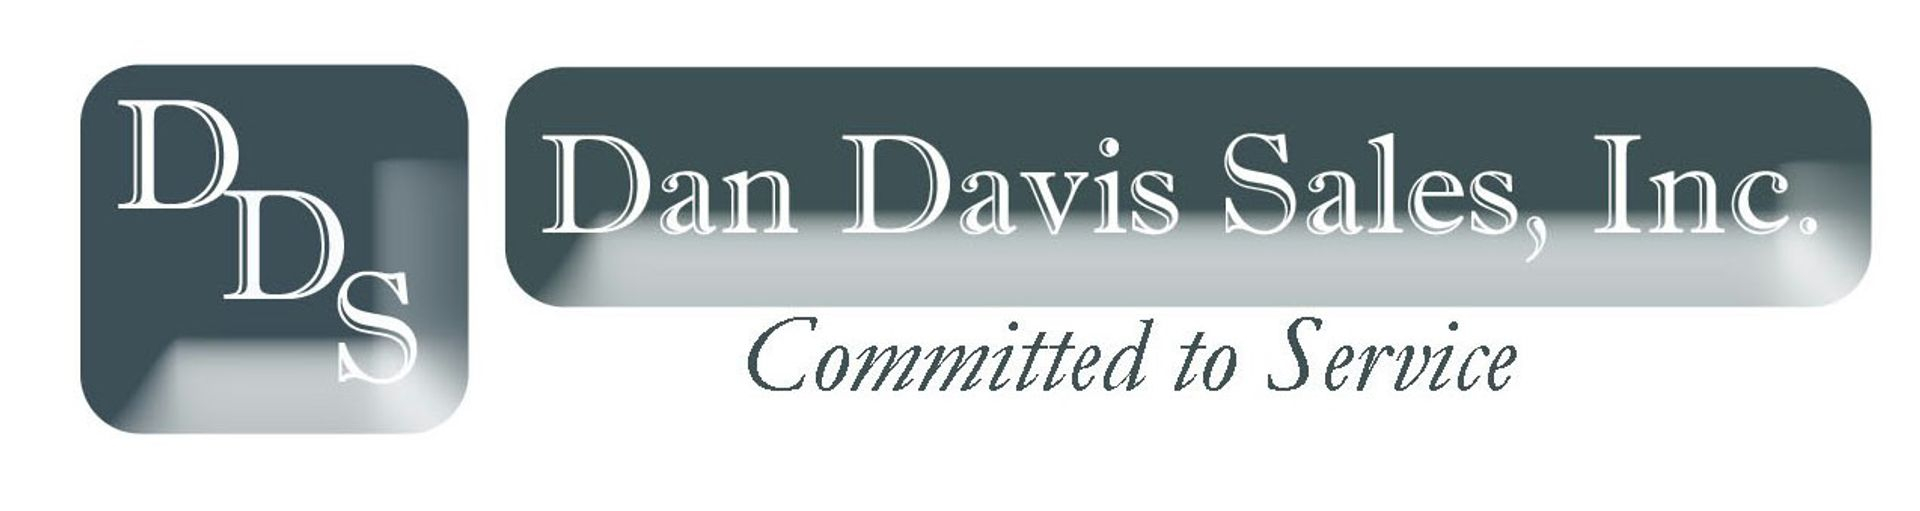 Dan Davis Sales